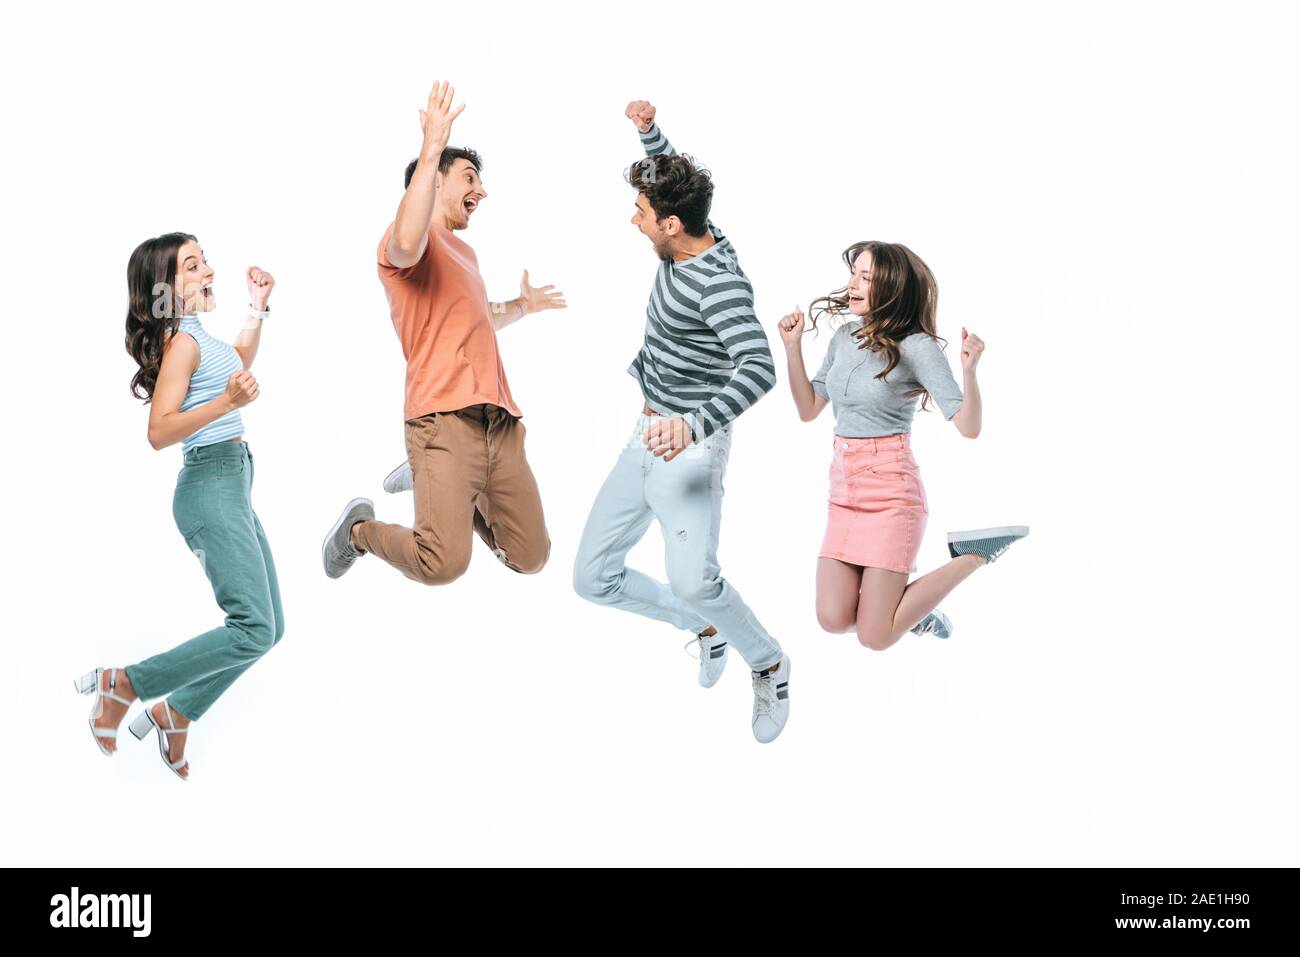 Emozionato amici jumping insieme, isolato su bianco Foto Stock